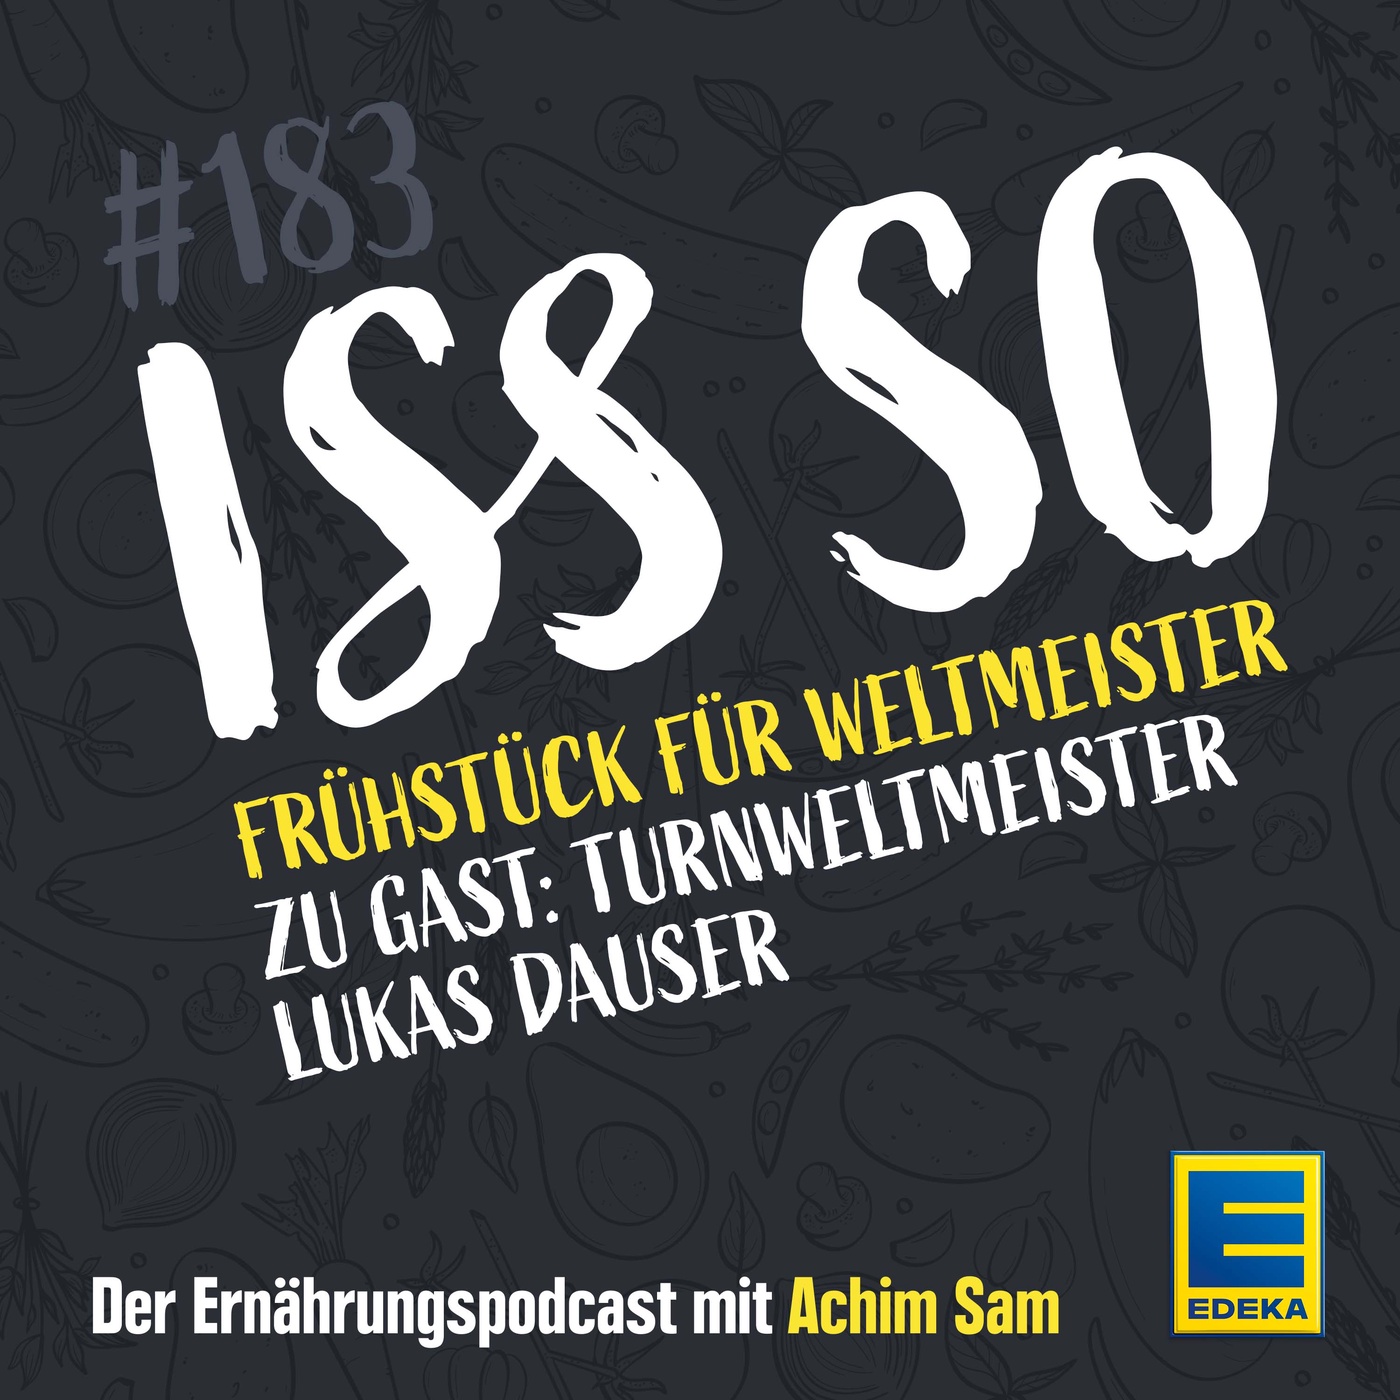 EP 183: Frühstück für Weltmeister - die Müslifolge - Zu Gast: Turnweltmeister Lukas Dauser